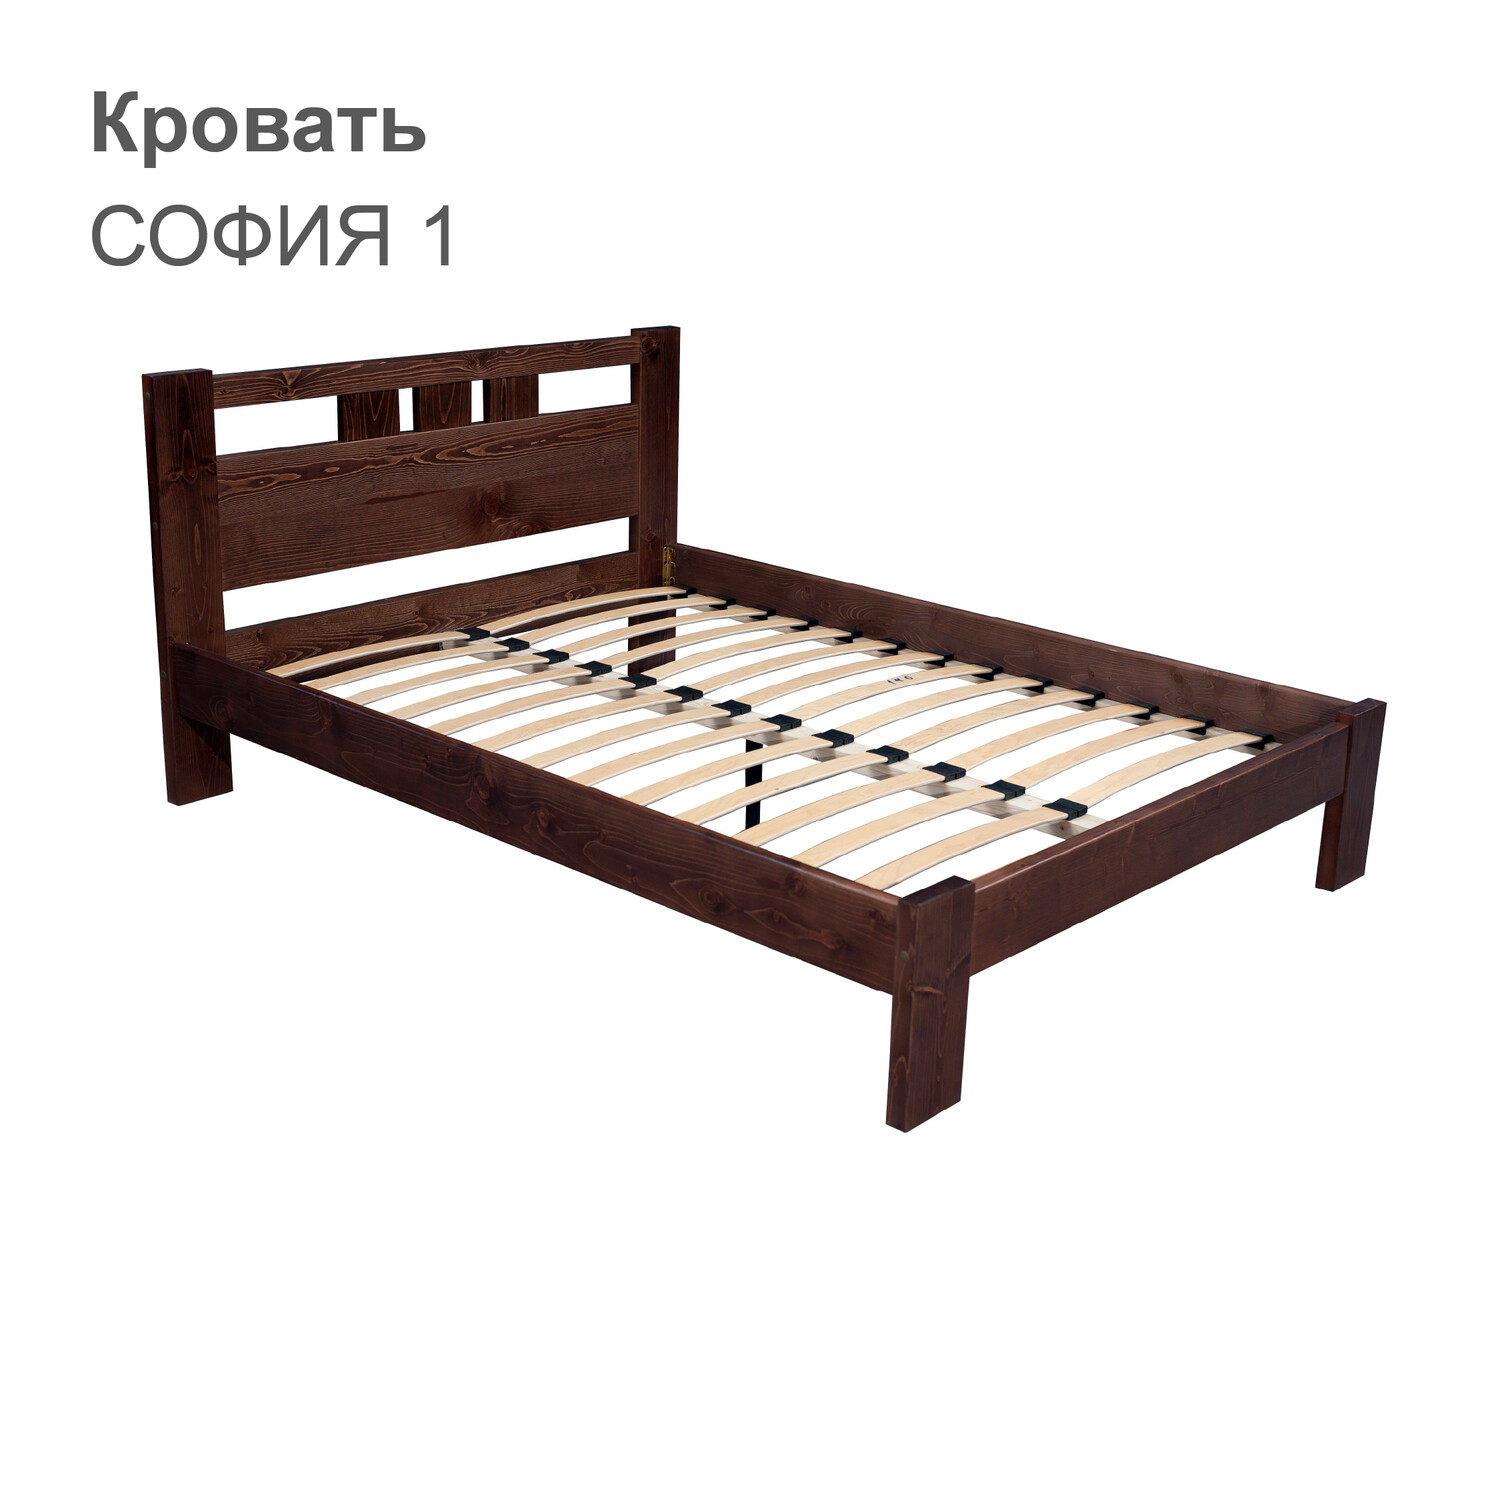 Кровать СОФИЯ 1 (с одной спинкой)